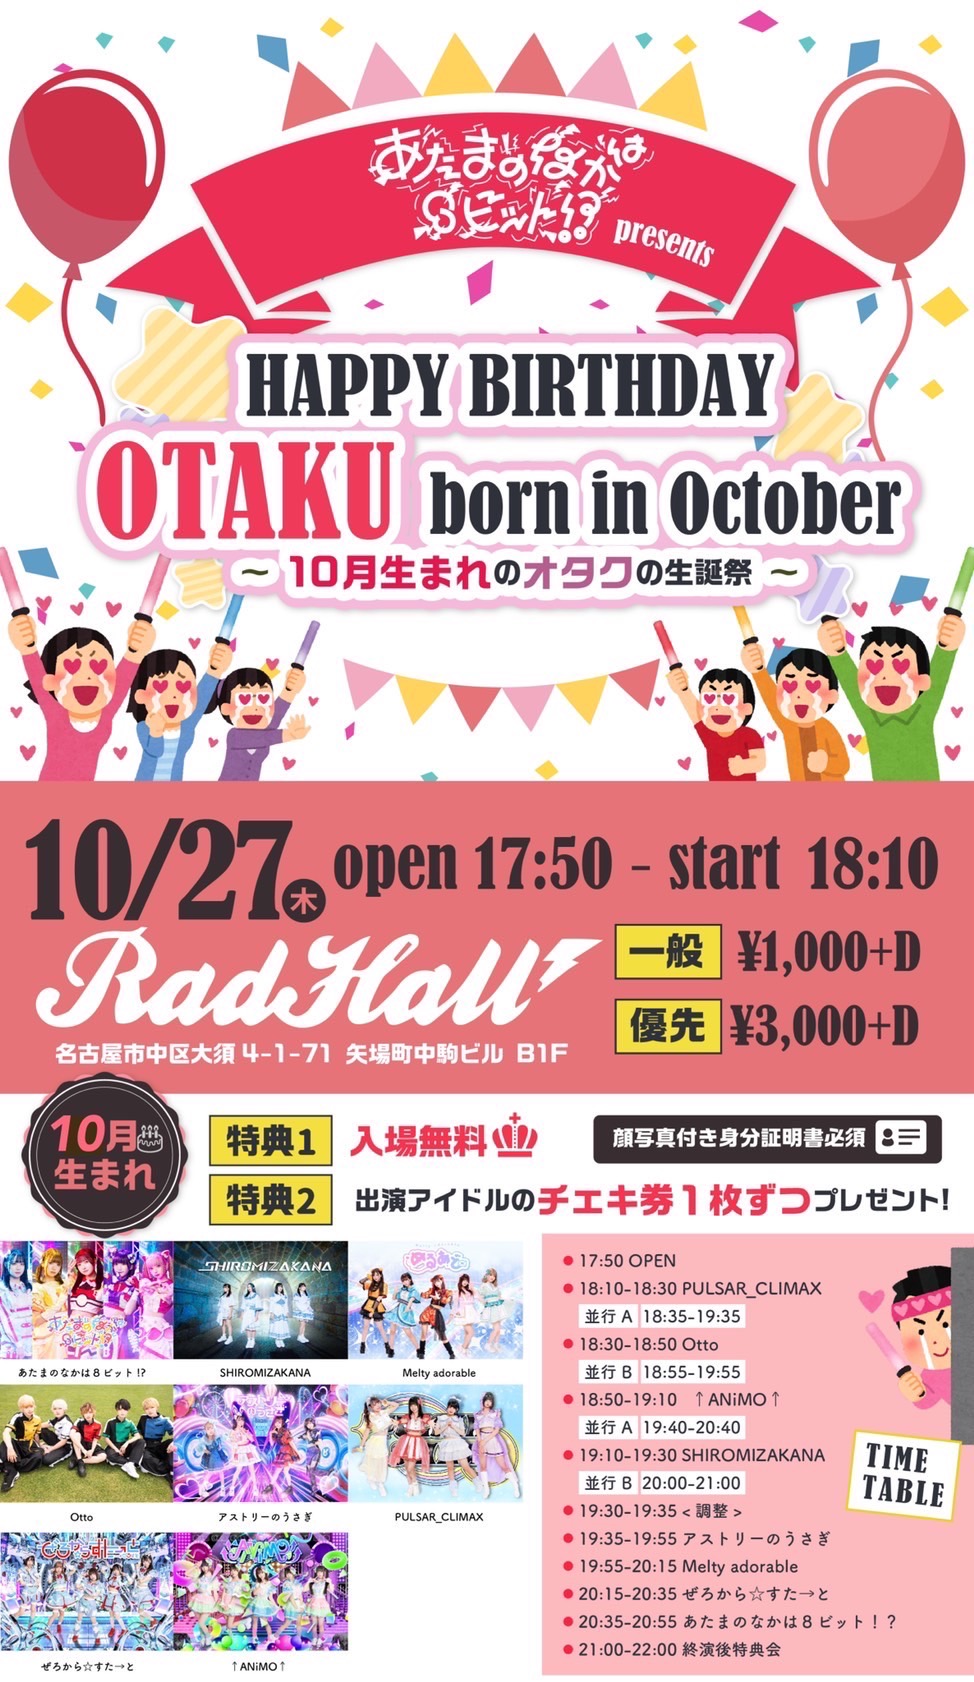 あたまのなかは8ビットpre. HAPPY BIRTHDAY OTAKU born in October